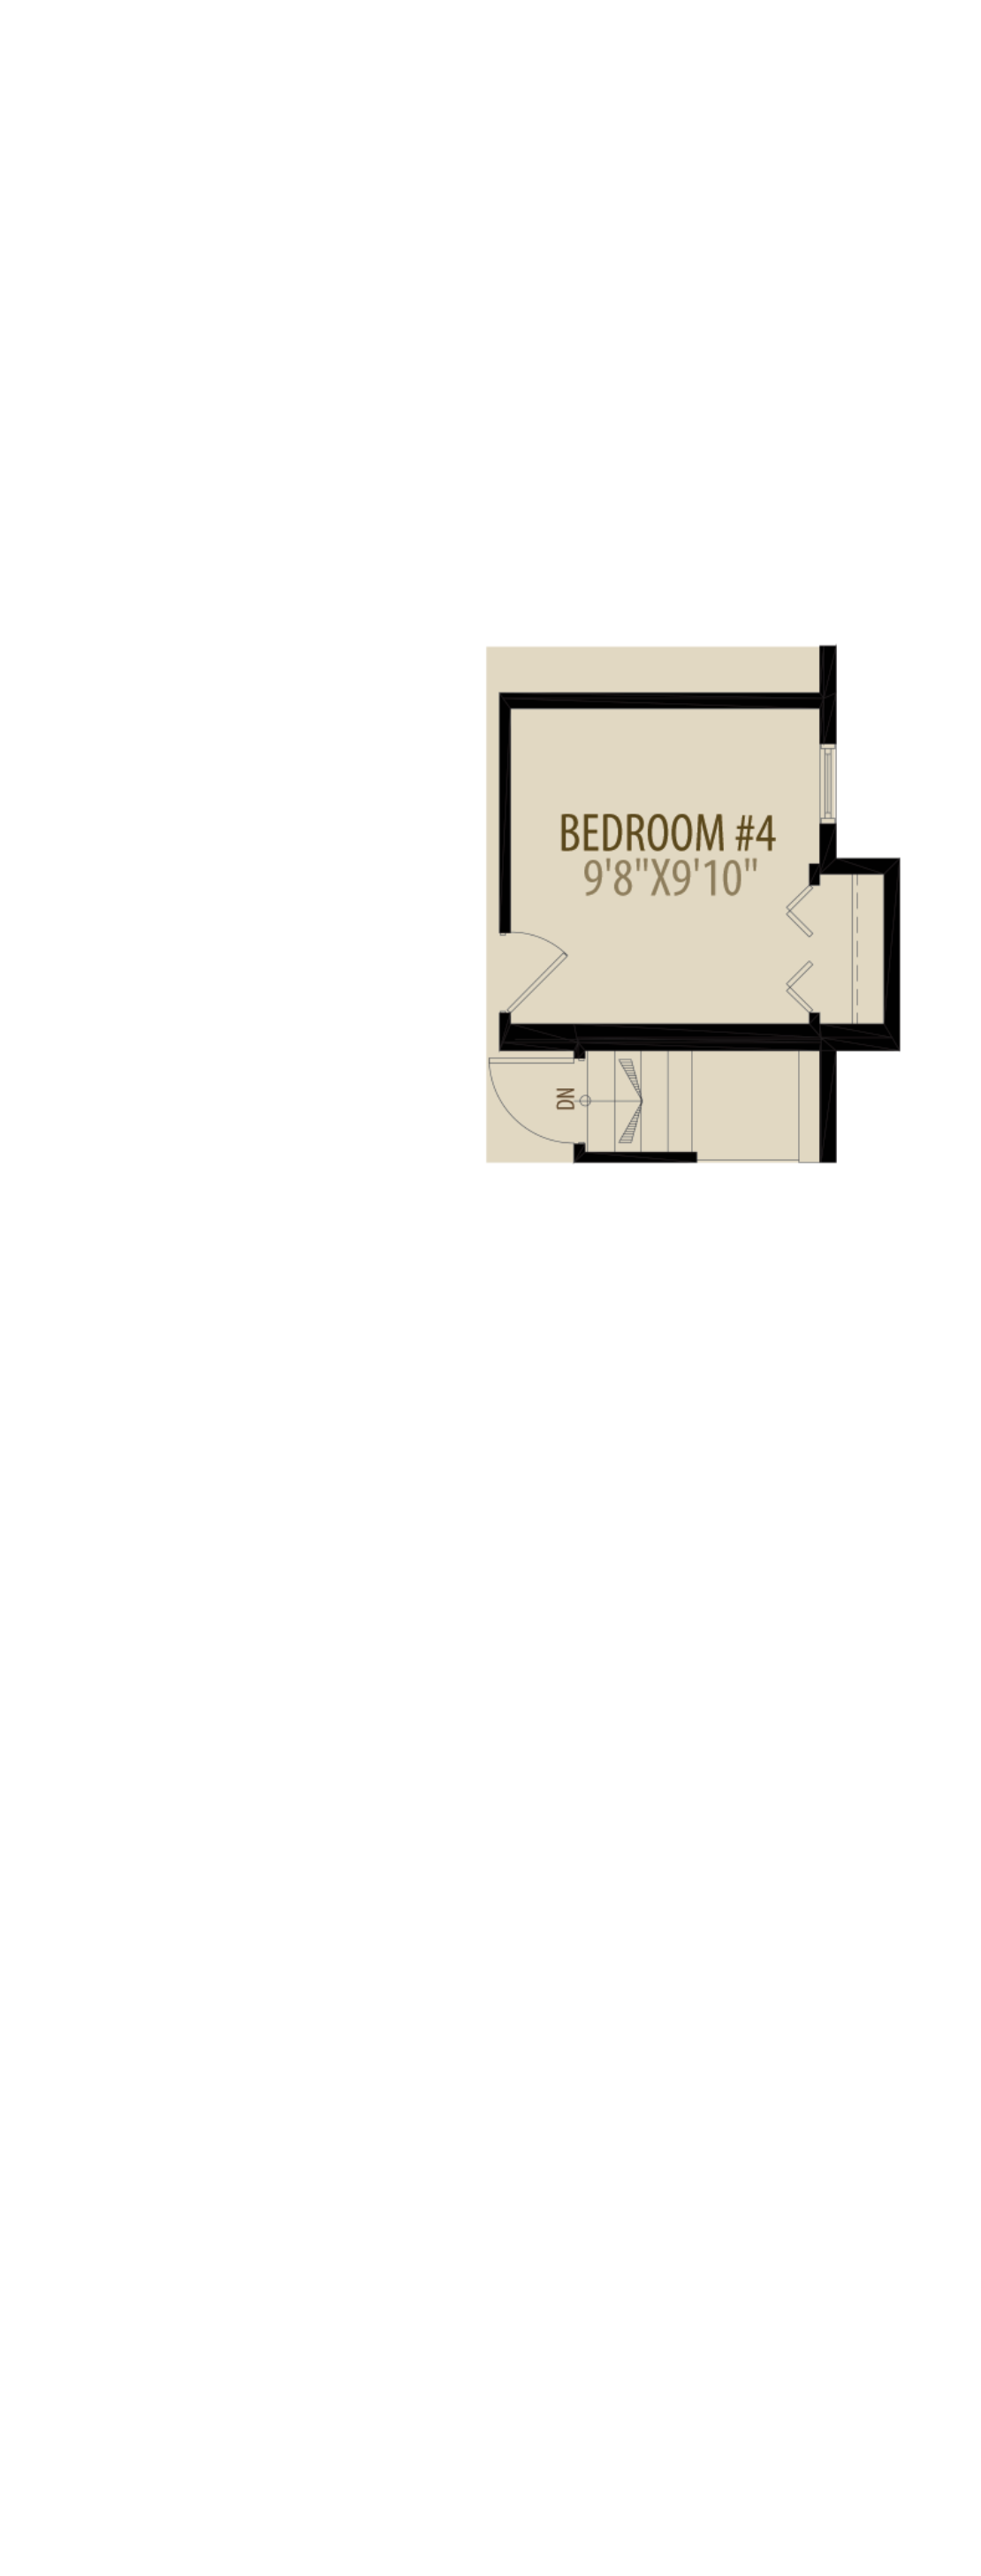 Main Floor Bedroom Adds 12 sq ft